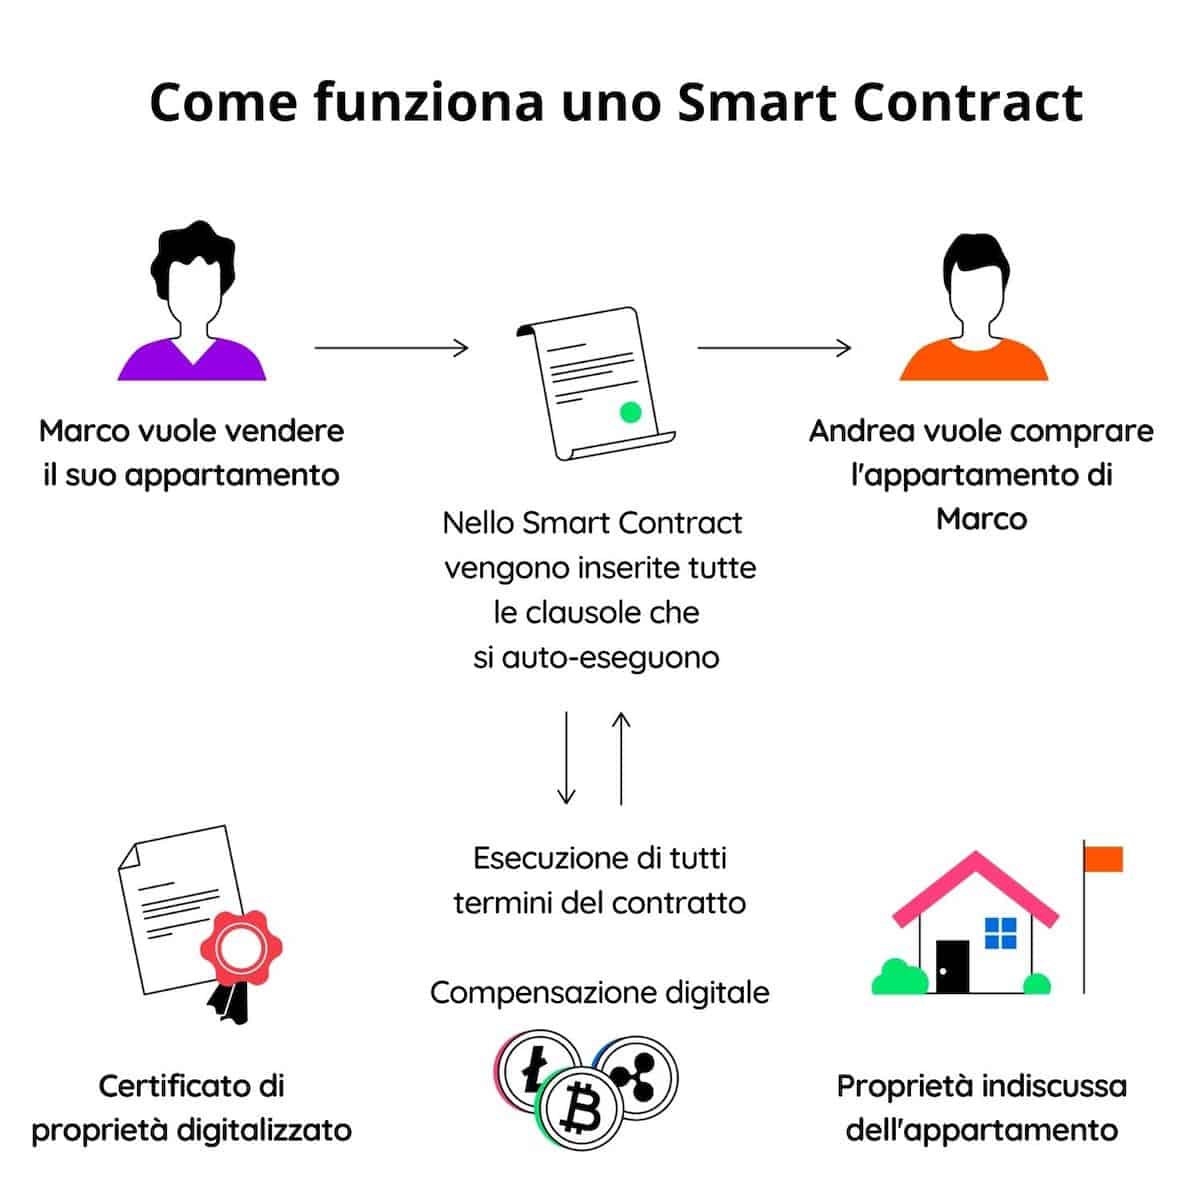 Come funziona uno Smart Contract